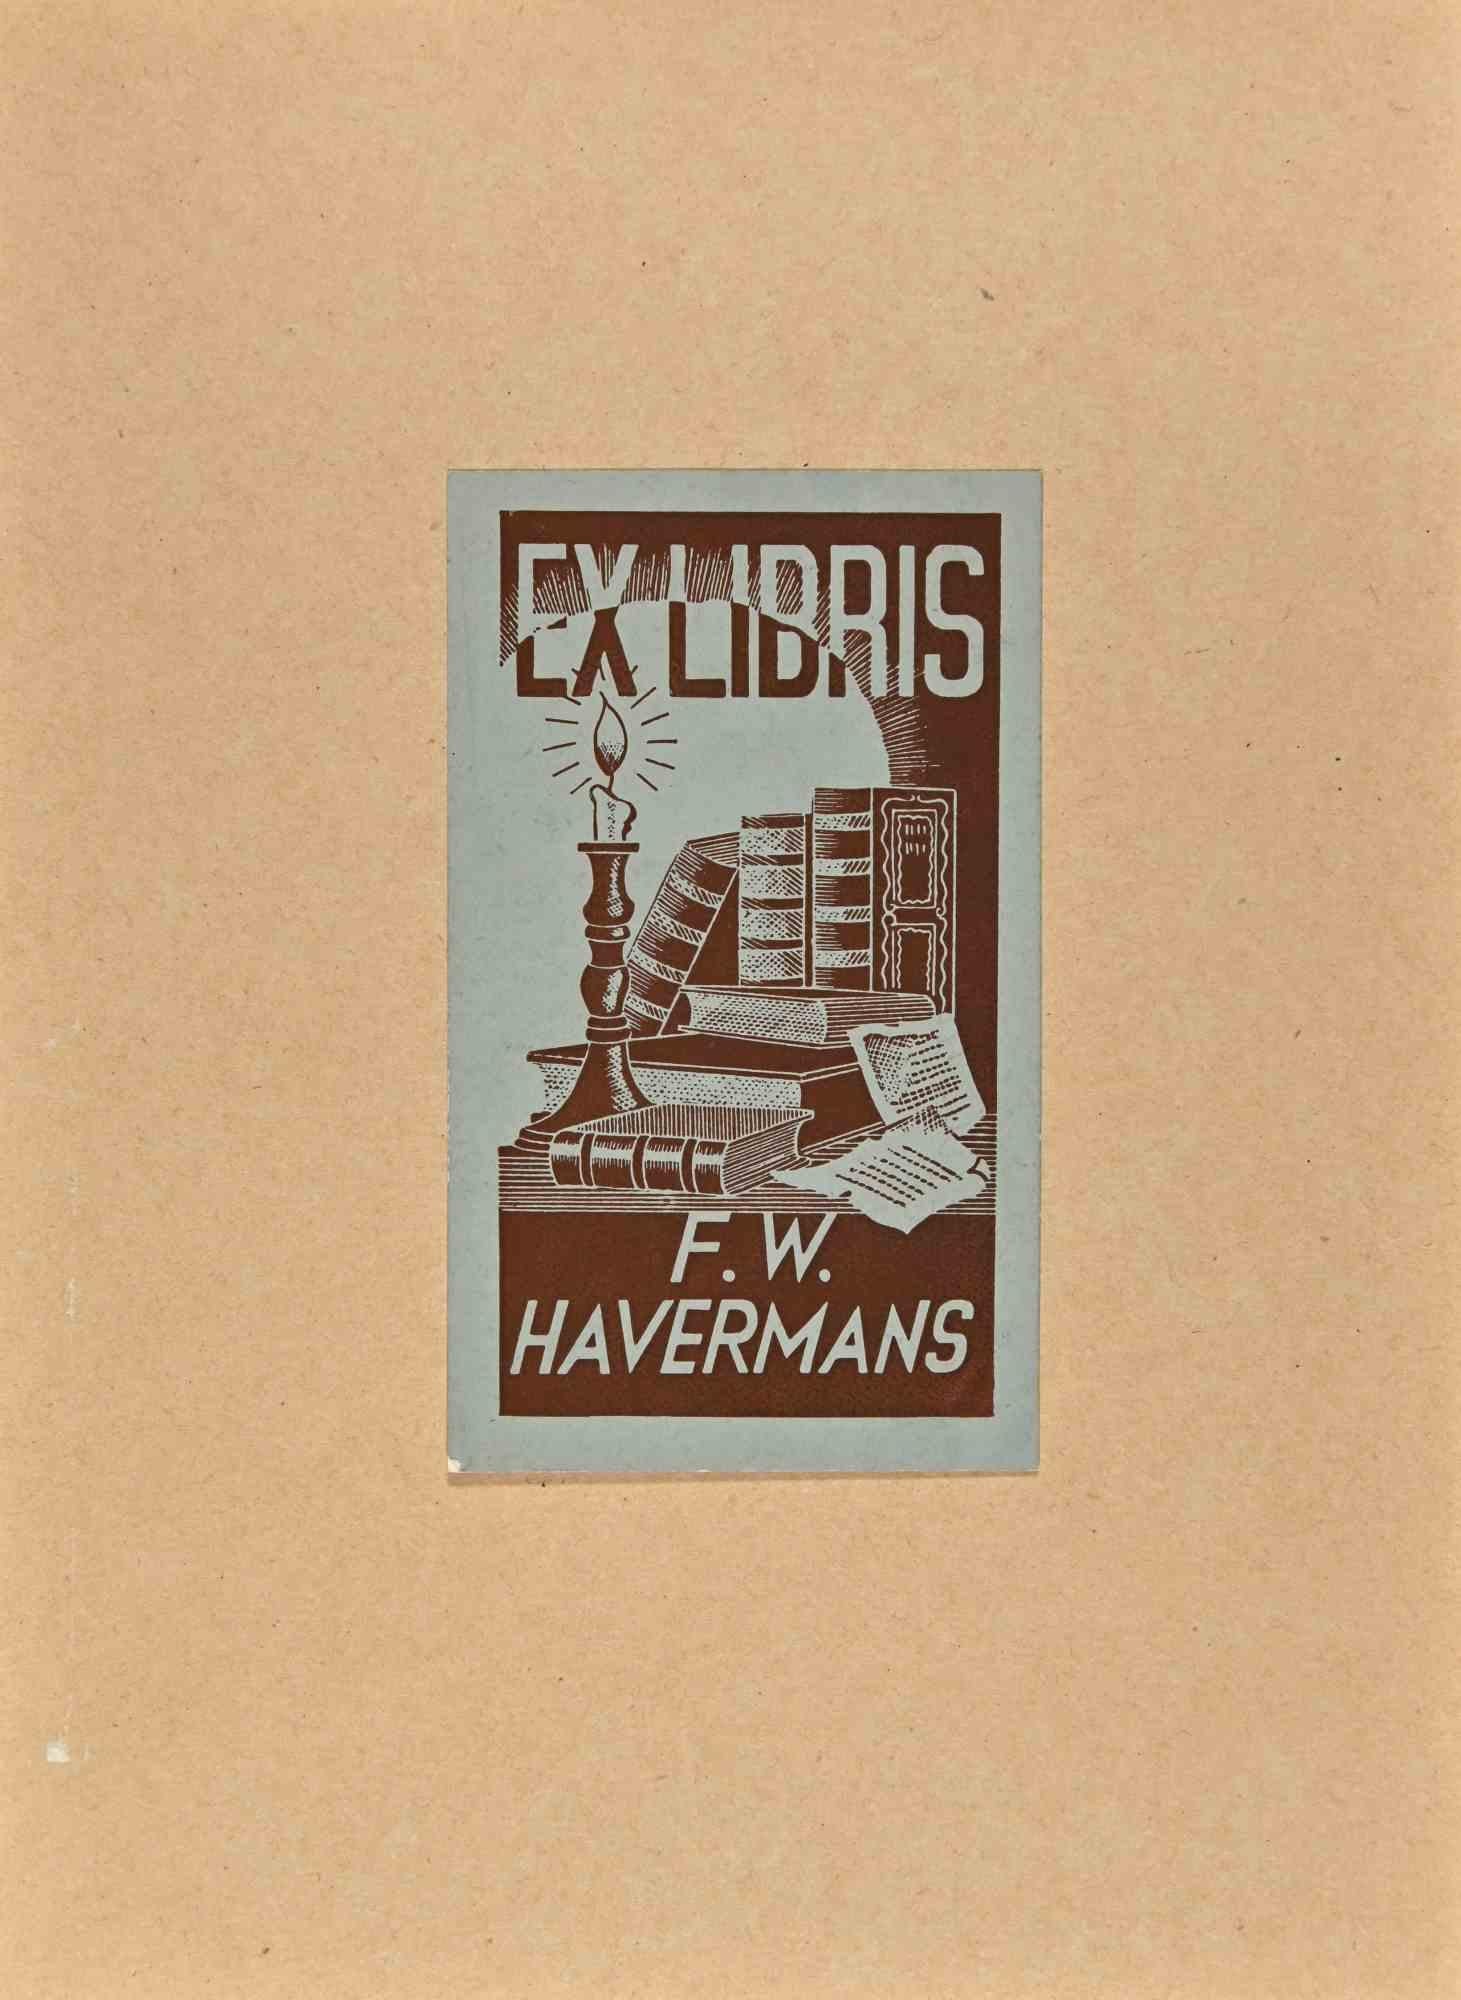  Ex Libris - F. W. Havermans - Mitte des 20. Jahrhunderts – Art von Unknown